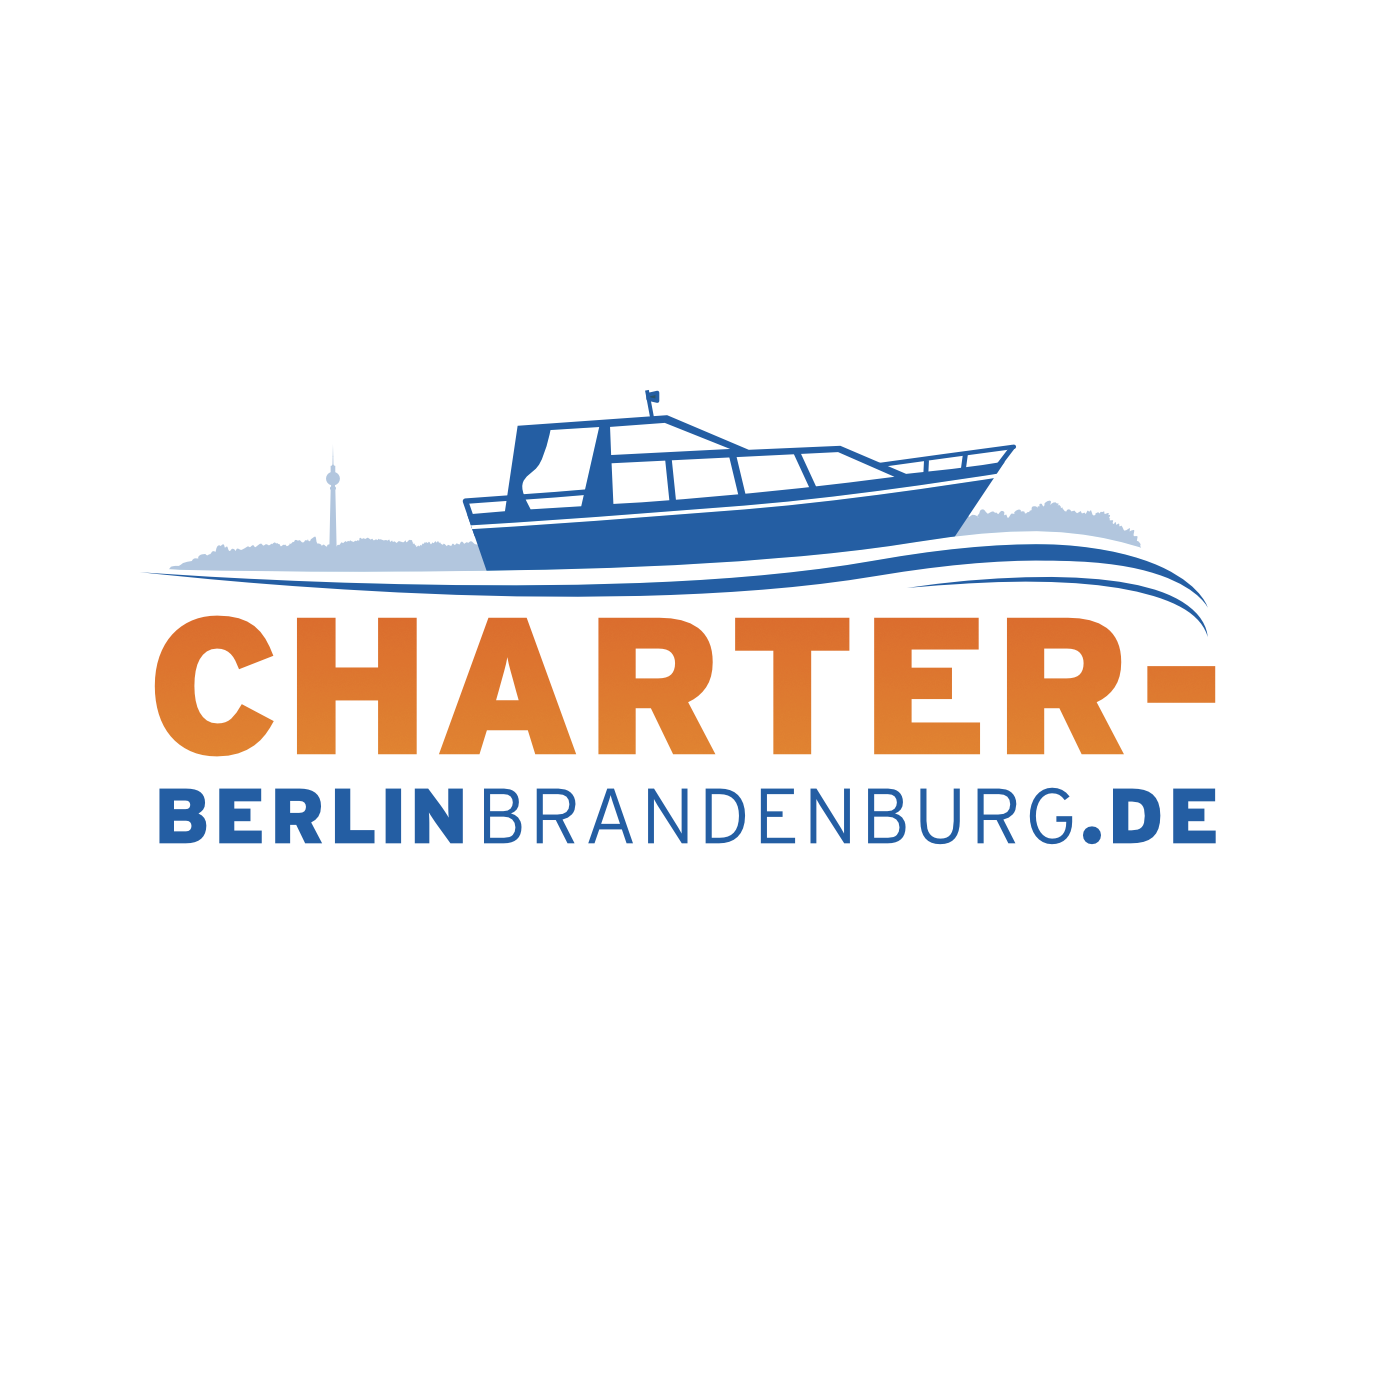 (c) Charter-berlinbrandenburg.de